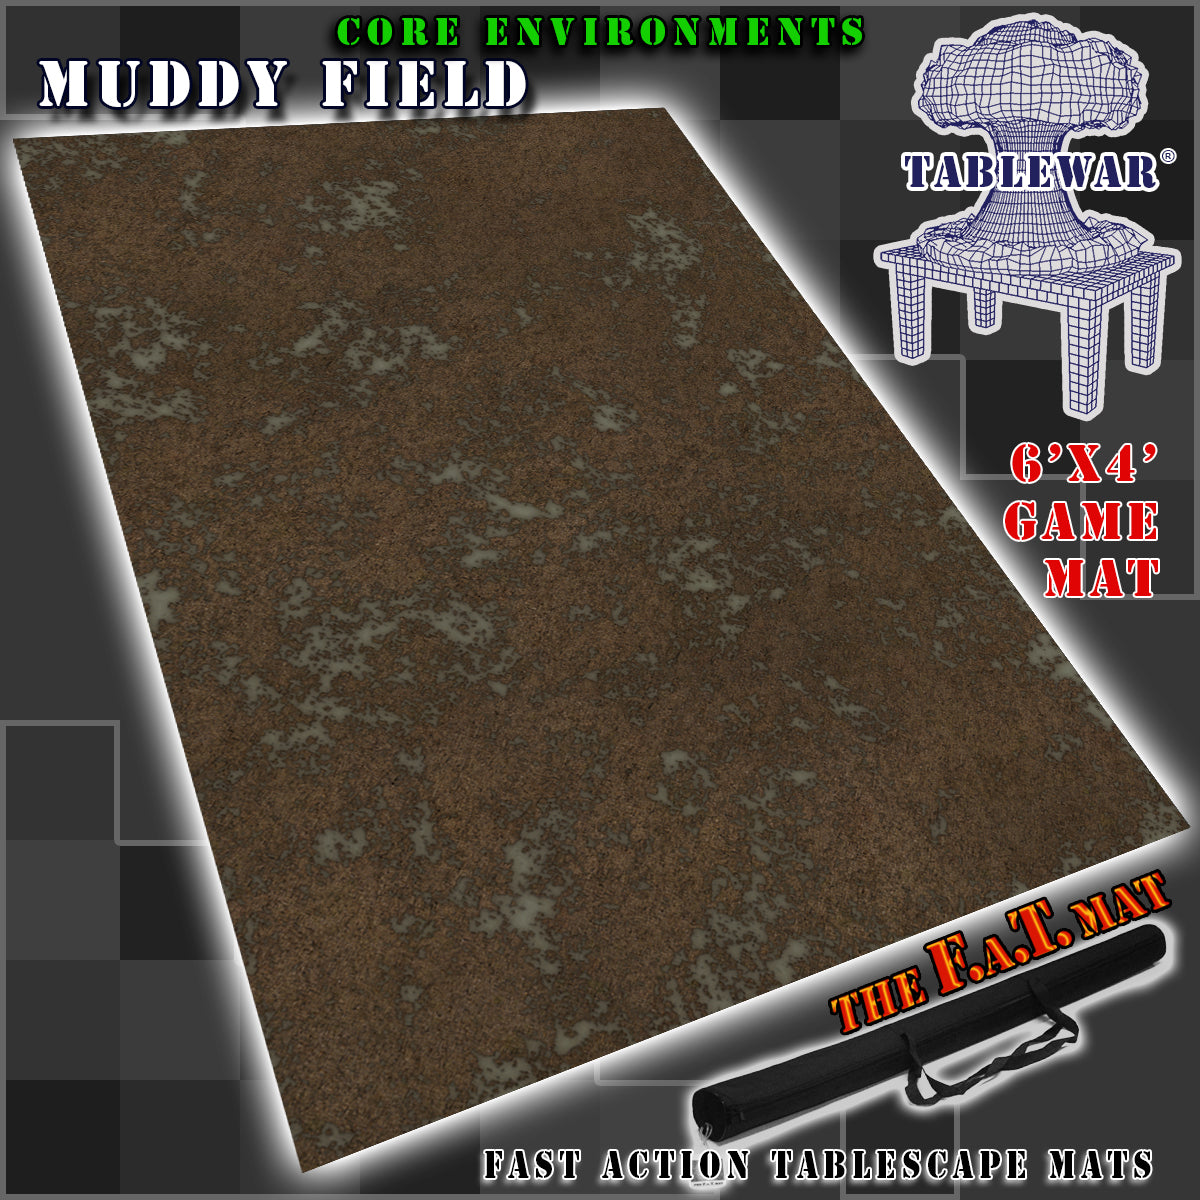 6x4 'Muddy Field' F.A.T. Mat Gaming Mat – TABLEWAR®